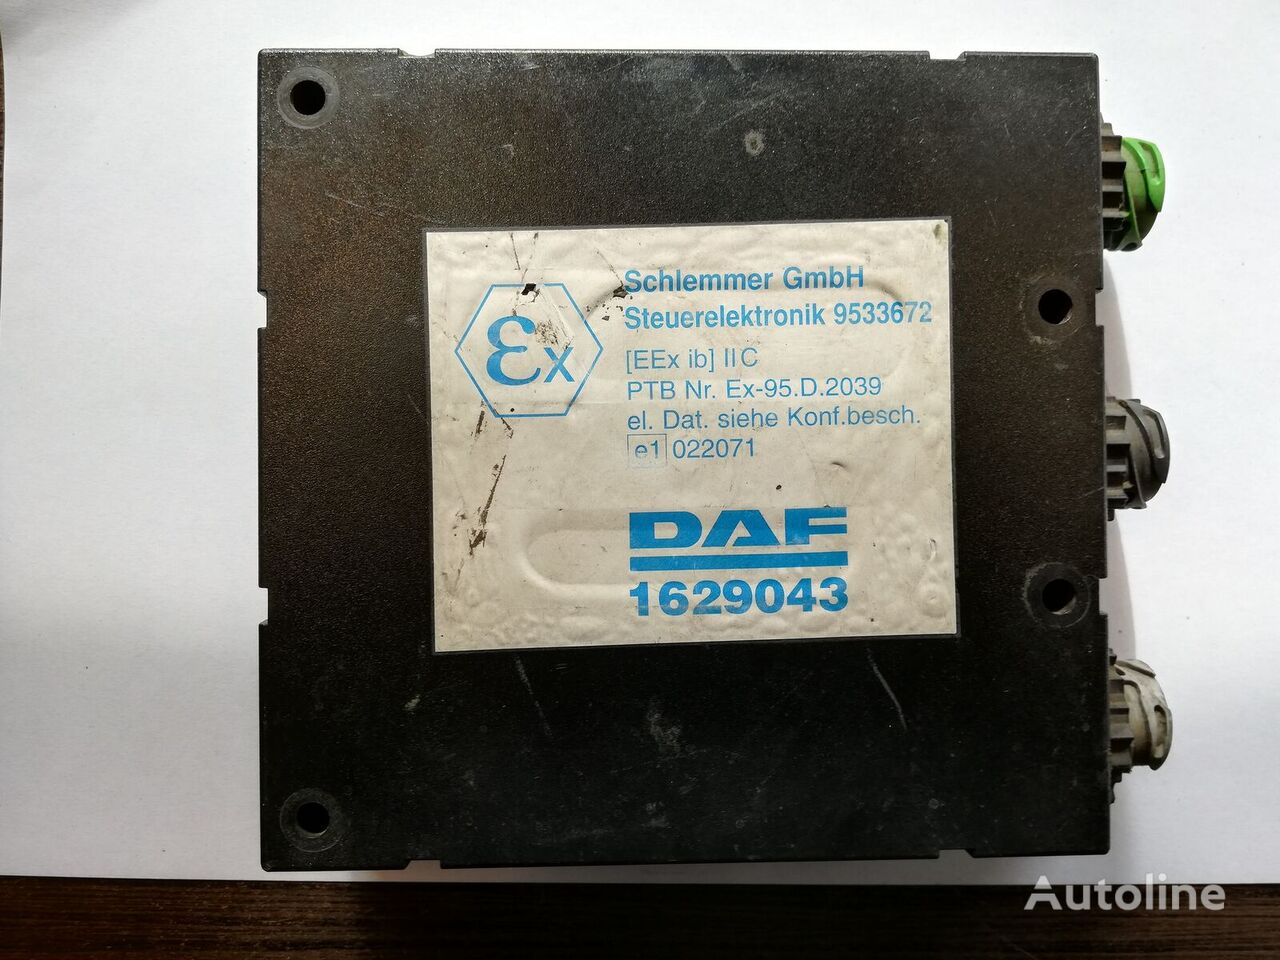 DAF XF 95 1629043 upravljačka jedinica za DAF XF 95 tegljača